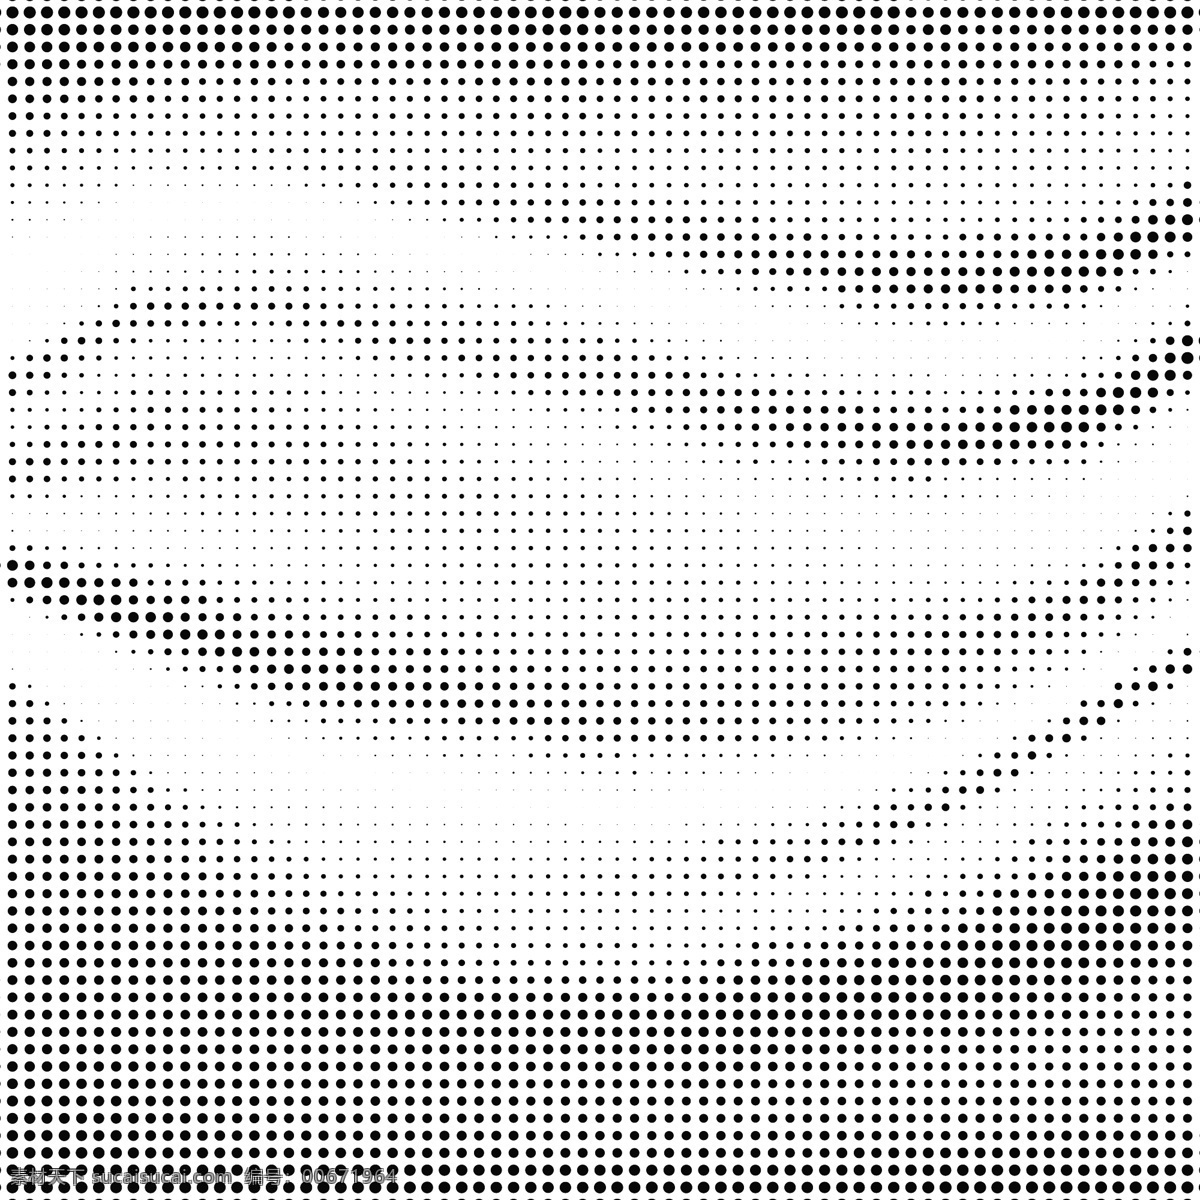 带有 半 色调 网点 波 状 背景 抽象背景 抽象 波浪 形状 烟雾 现代 抽象的形状 柔软 浮动 波浪背景 环境 波浪形